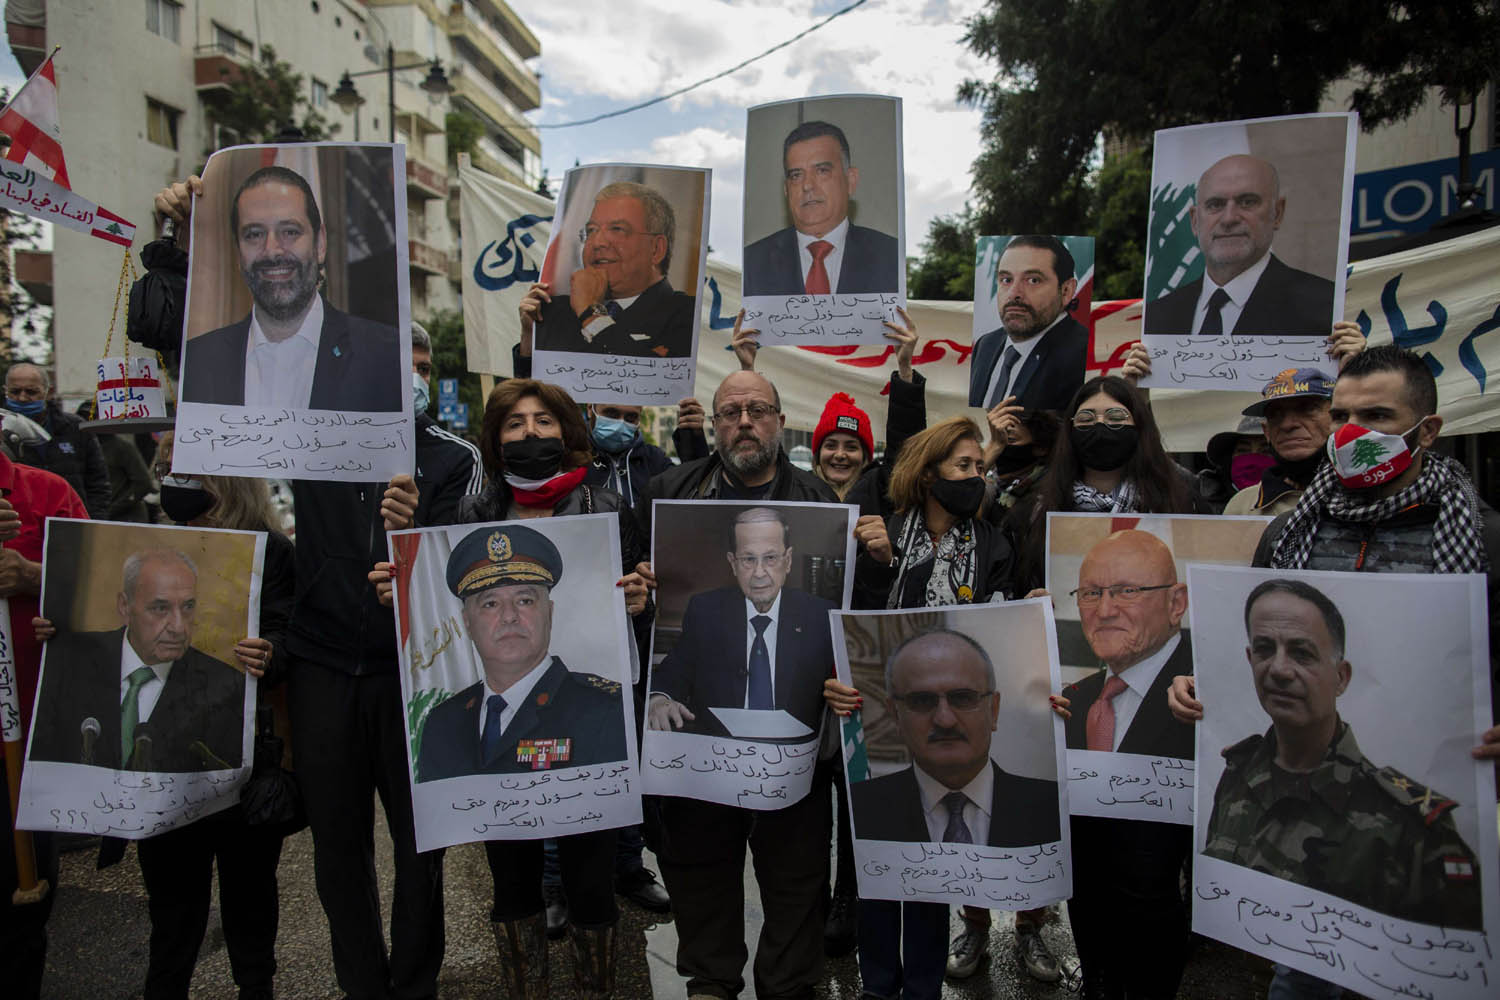 محتجون يرفعون صورا لكبار المسؤولين اللبنانيين الحاليين والسابقين